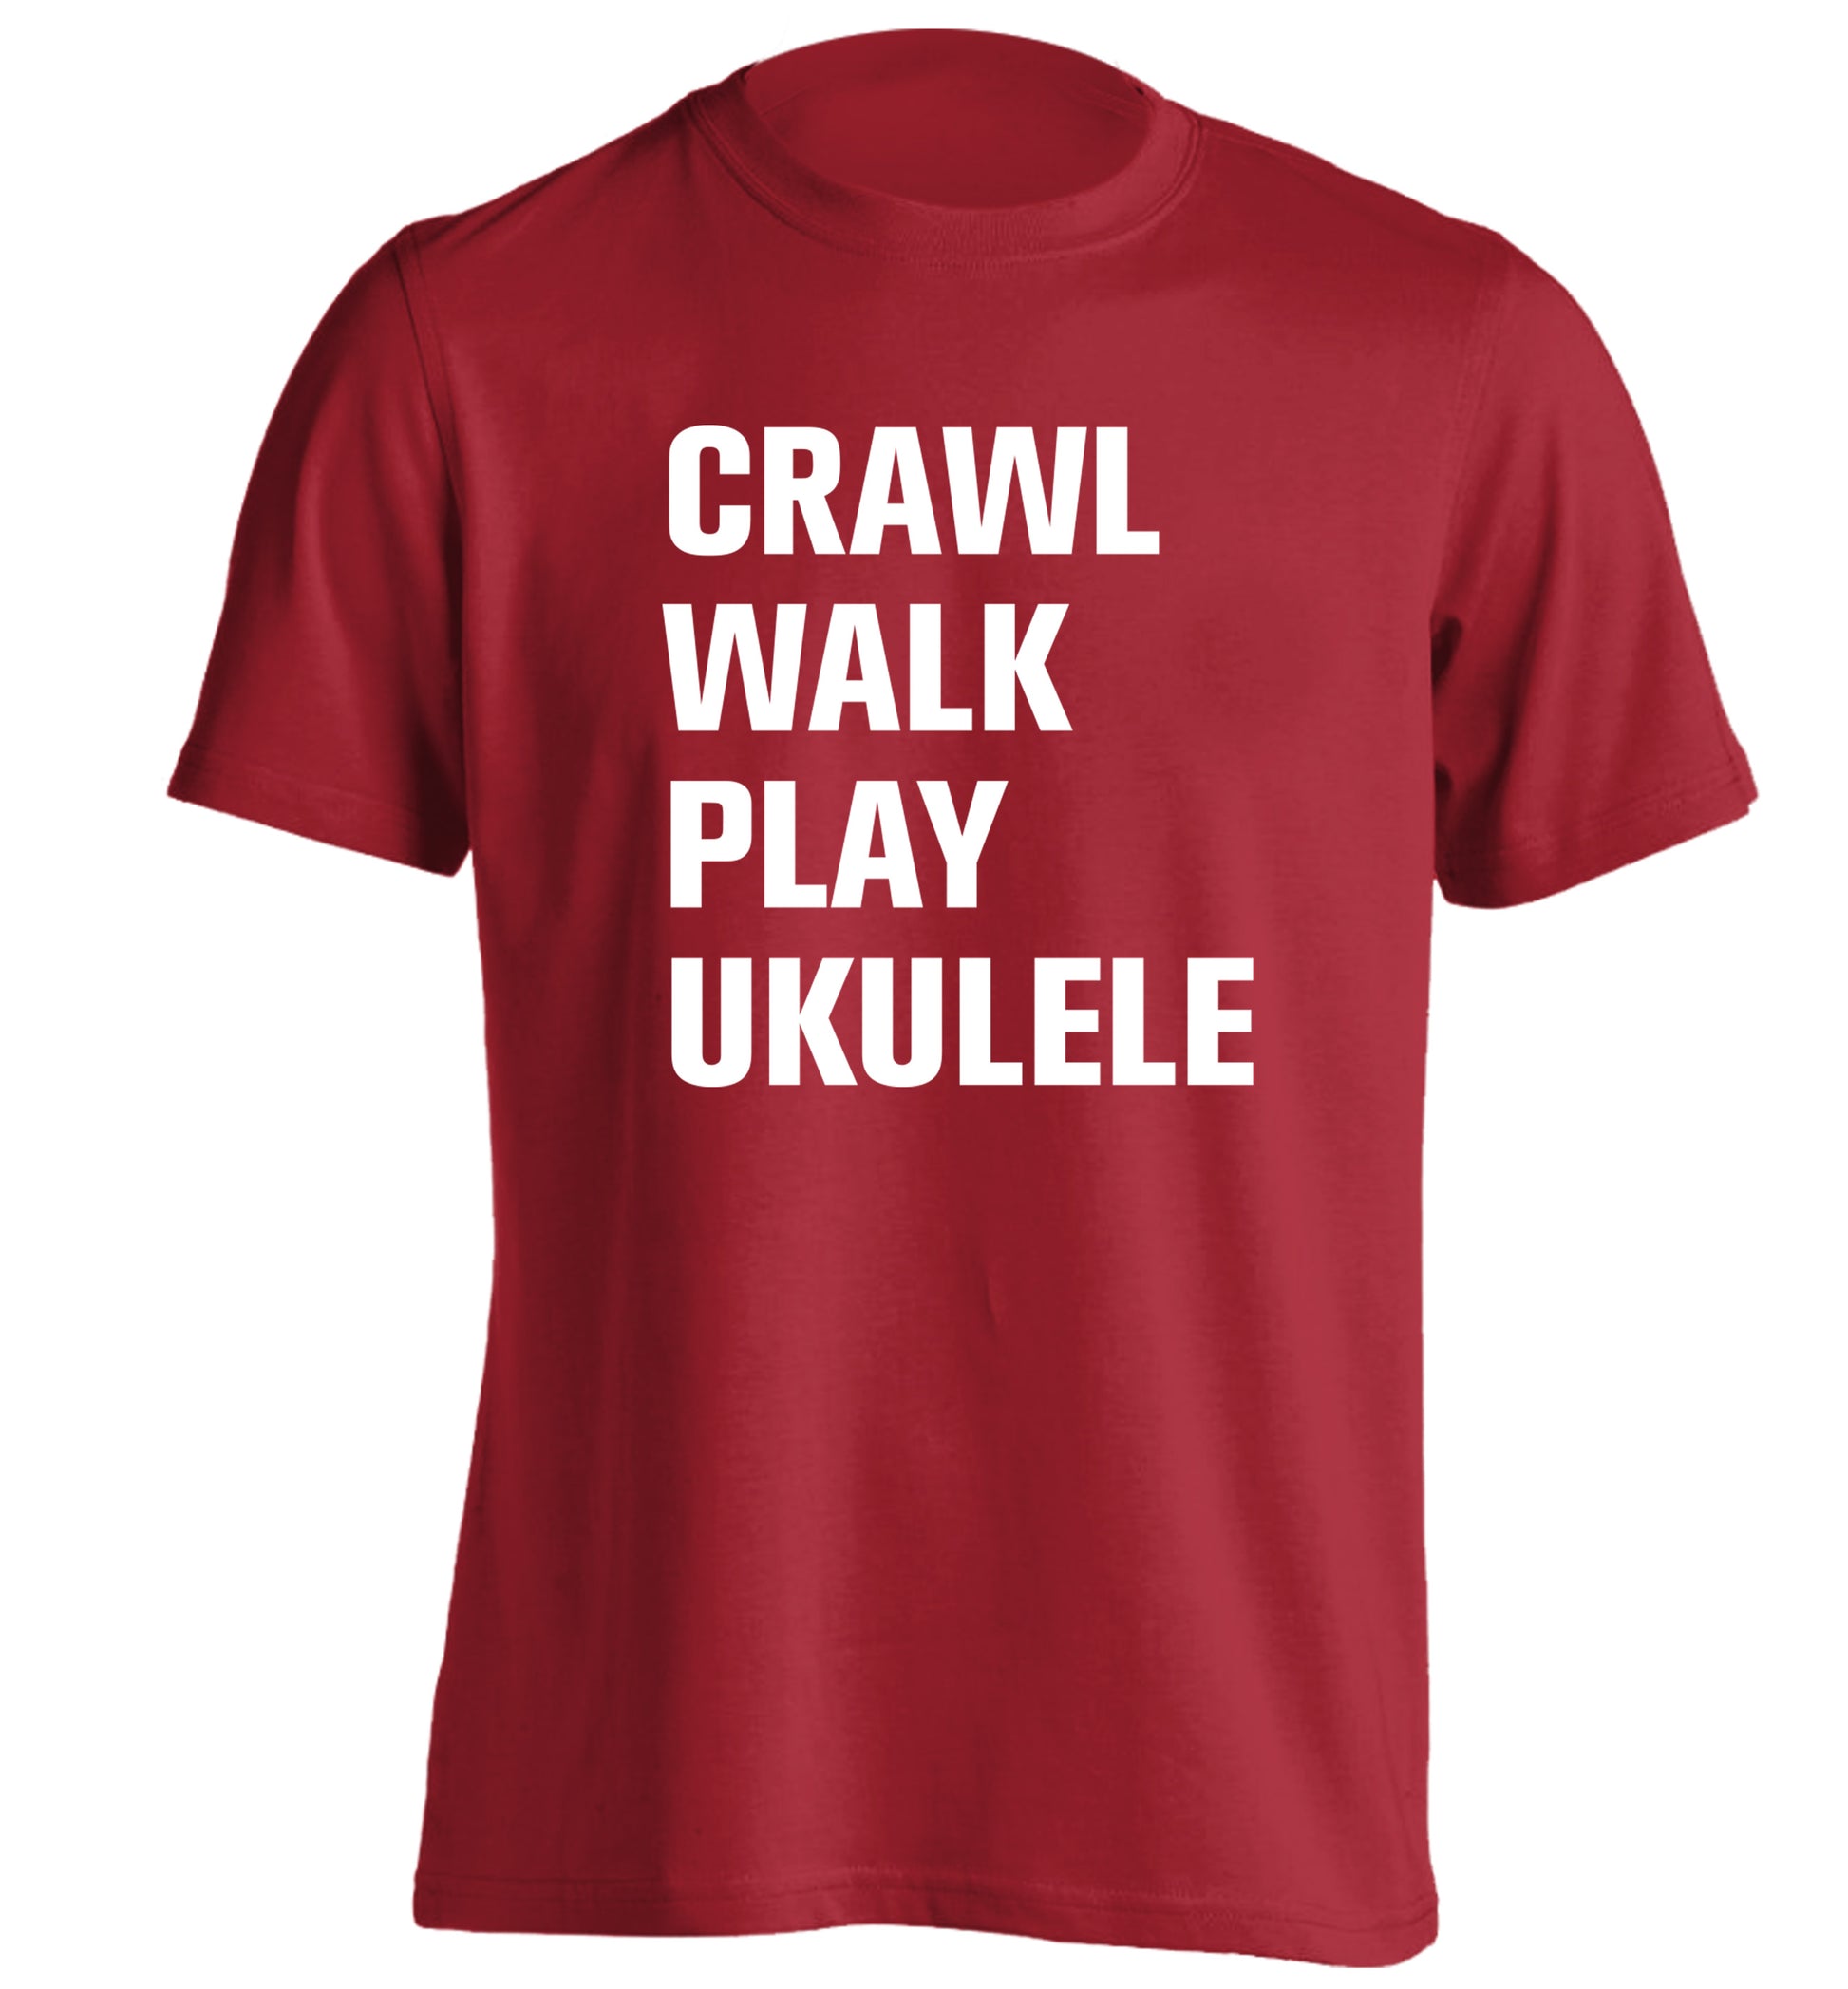 Crawl walk play ukulele adults unisex red Tshirt 2XL